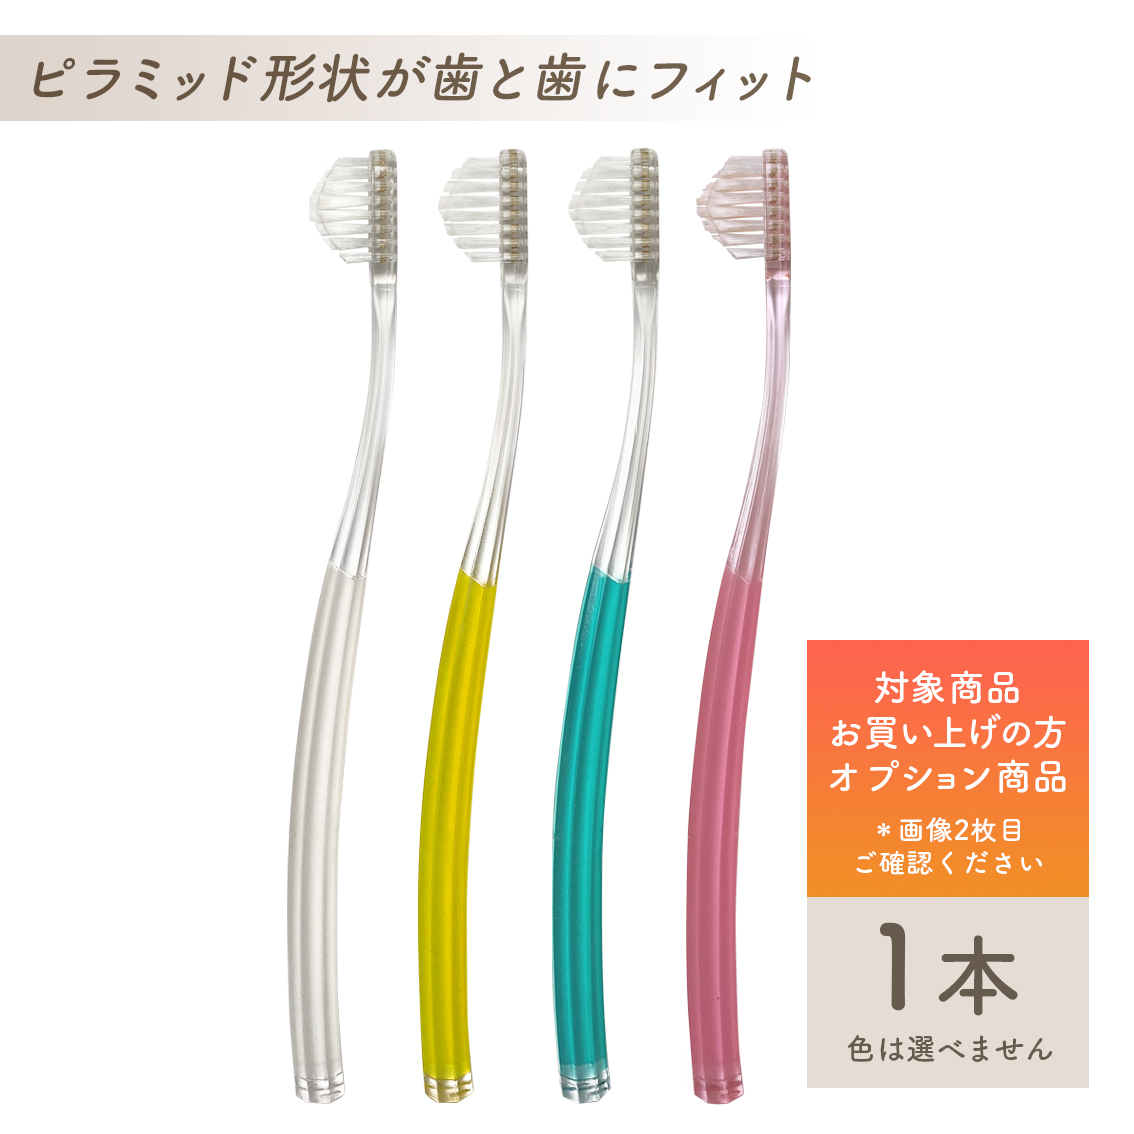 ふるさと割】 奇跡の歯ブラシ 大人用2本こども用 2本 合計4本セット 色選べます